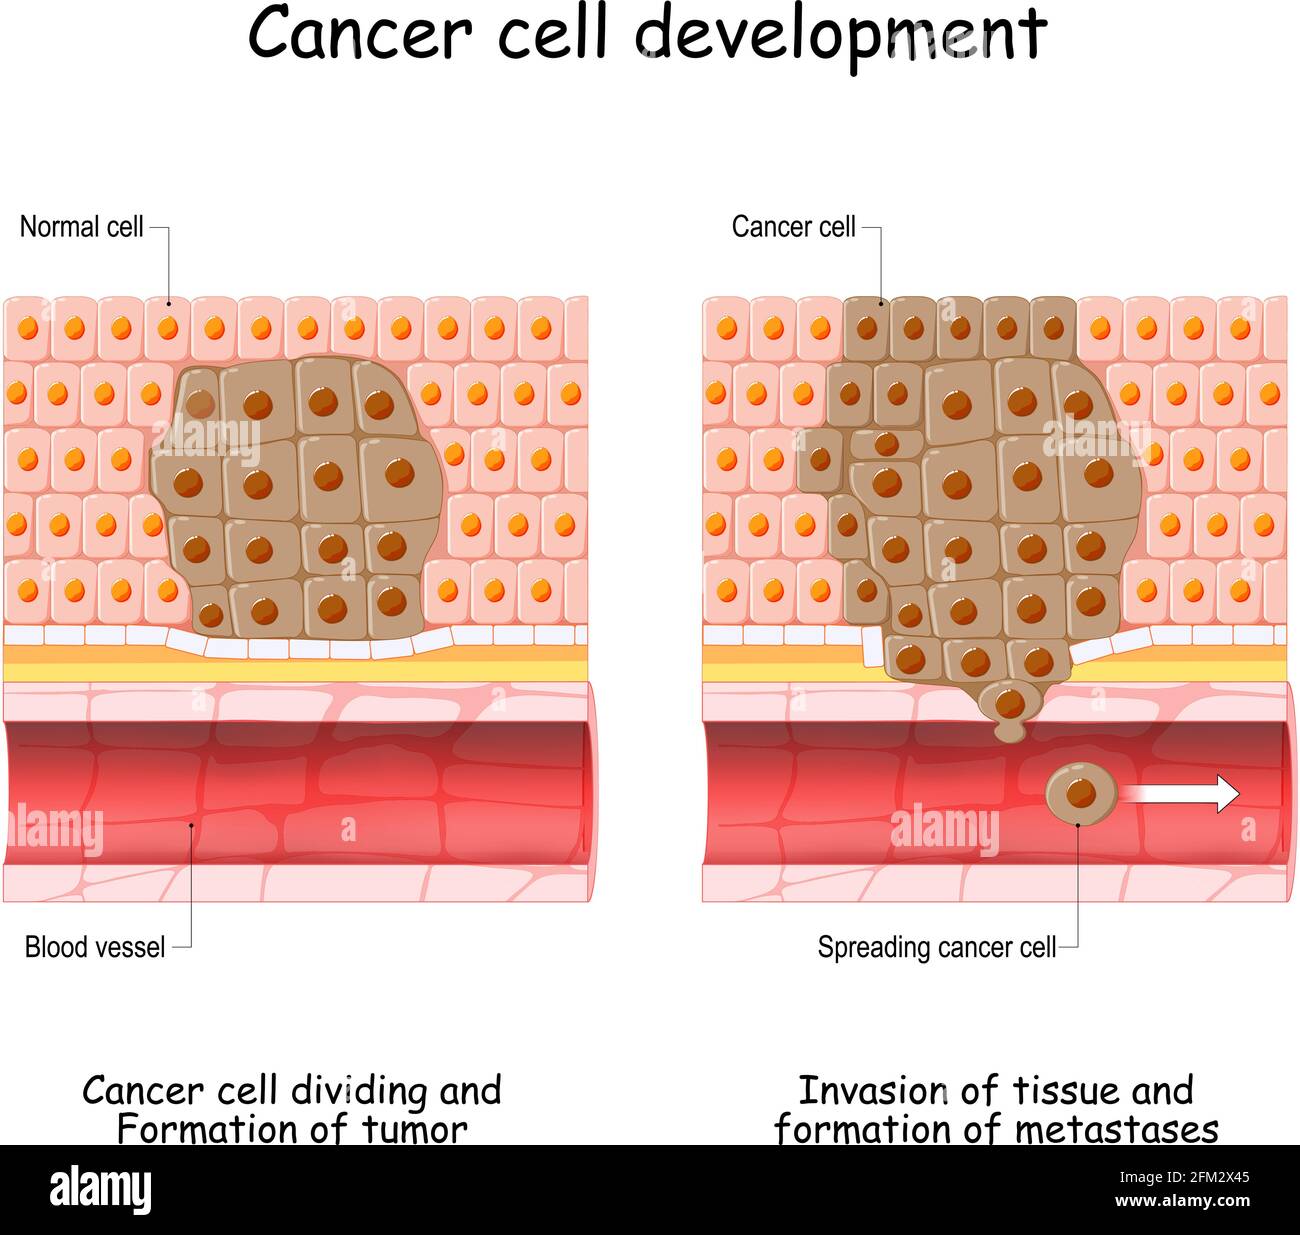 Sviluppo del cancro dalla cellula normale alla formazione del tumore, diffusione delle cellule tumorali nel flusso sanguigno, invasione di altri tessuti e formazione di metastasi Illustrazione Vettoriale